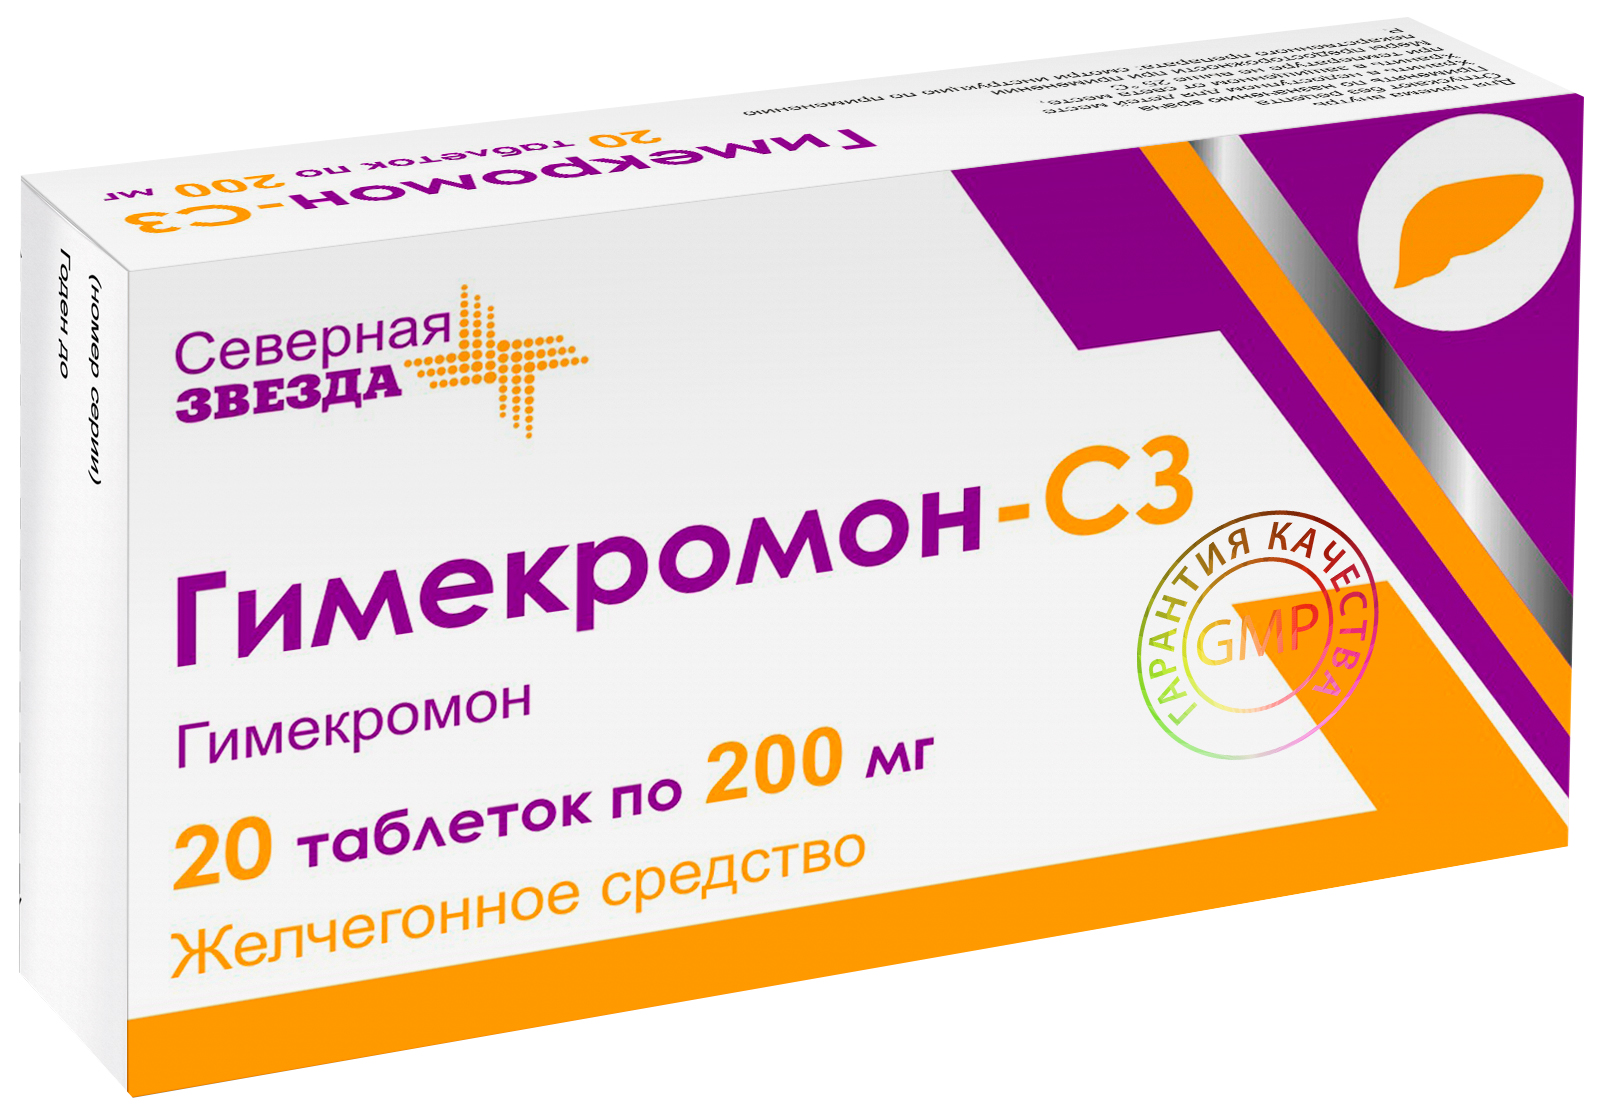 Гимекромон-СЗ таблетки 200 мг 20 шт.